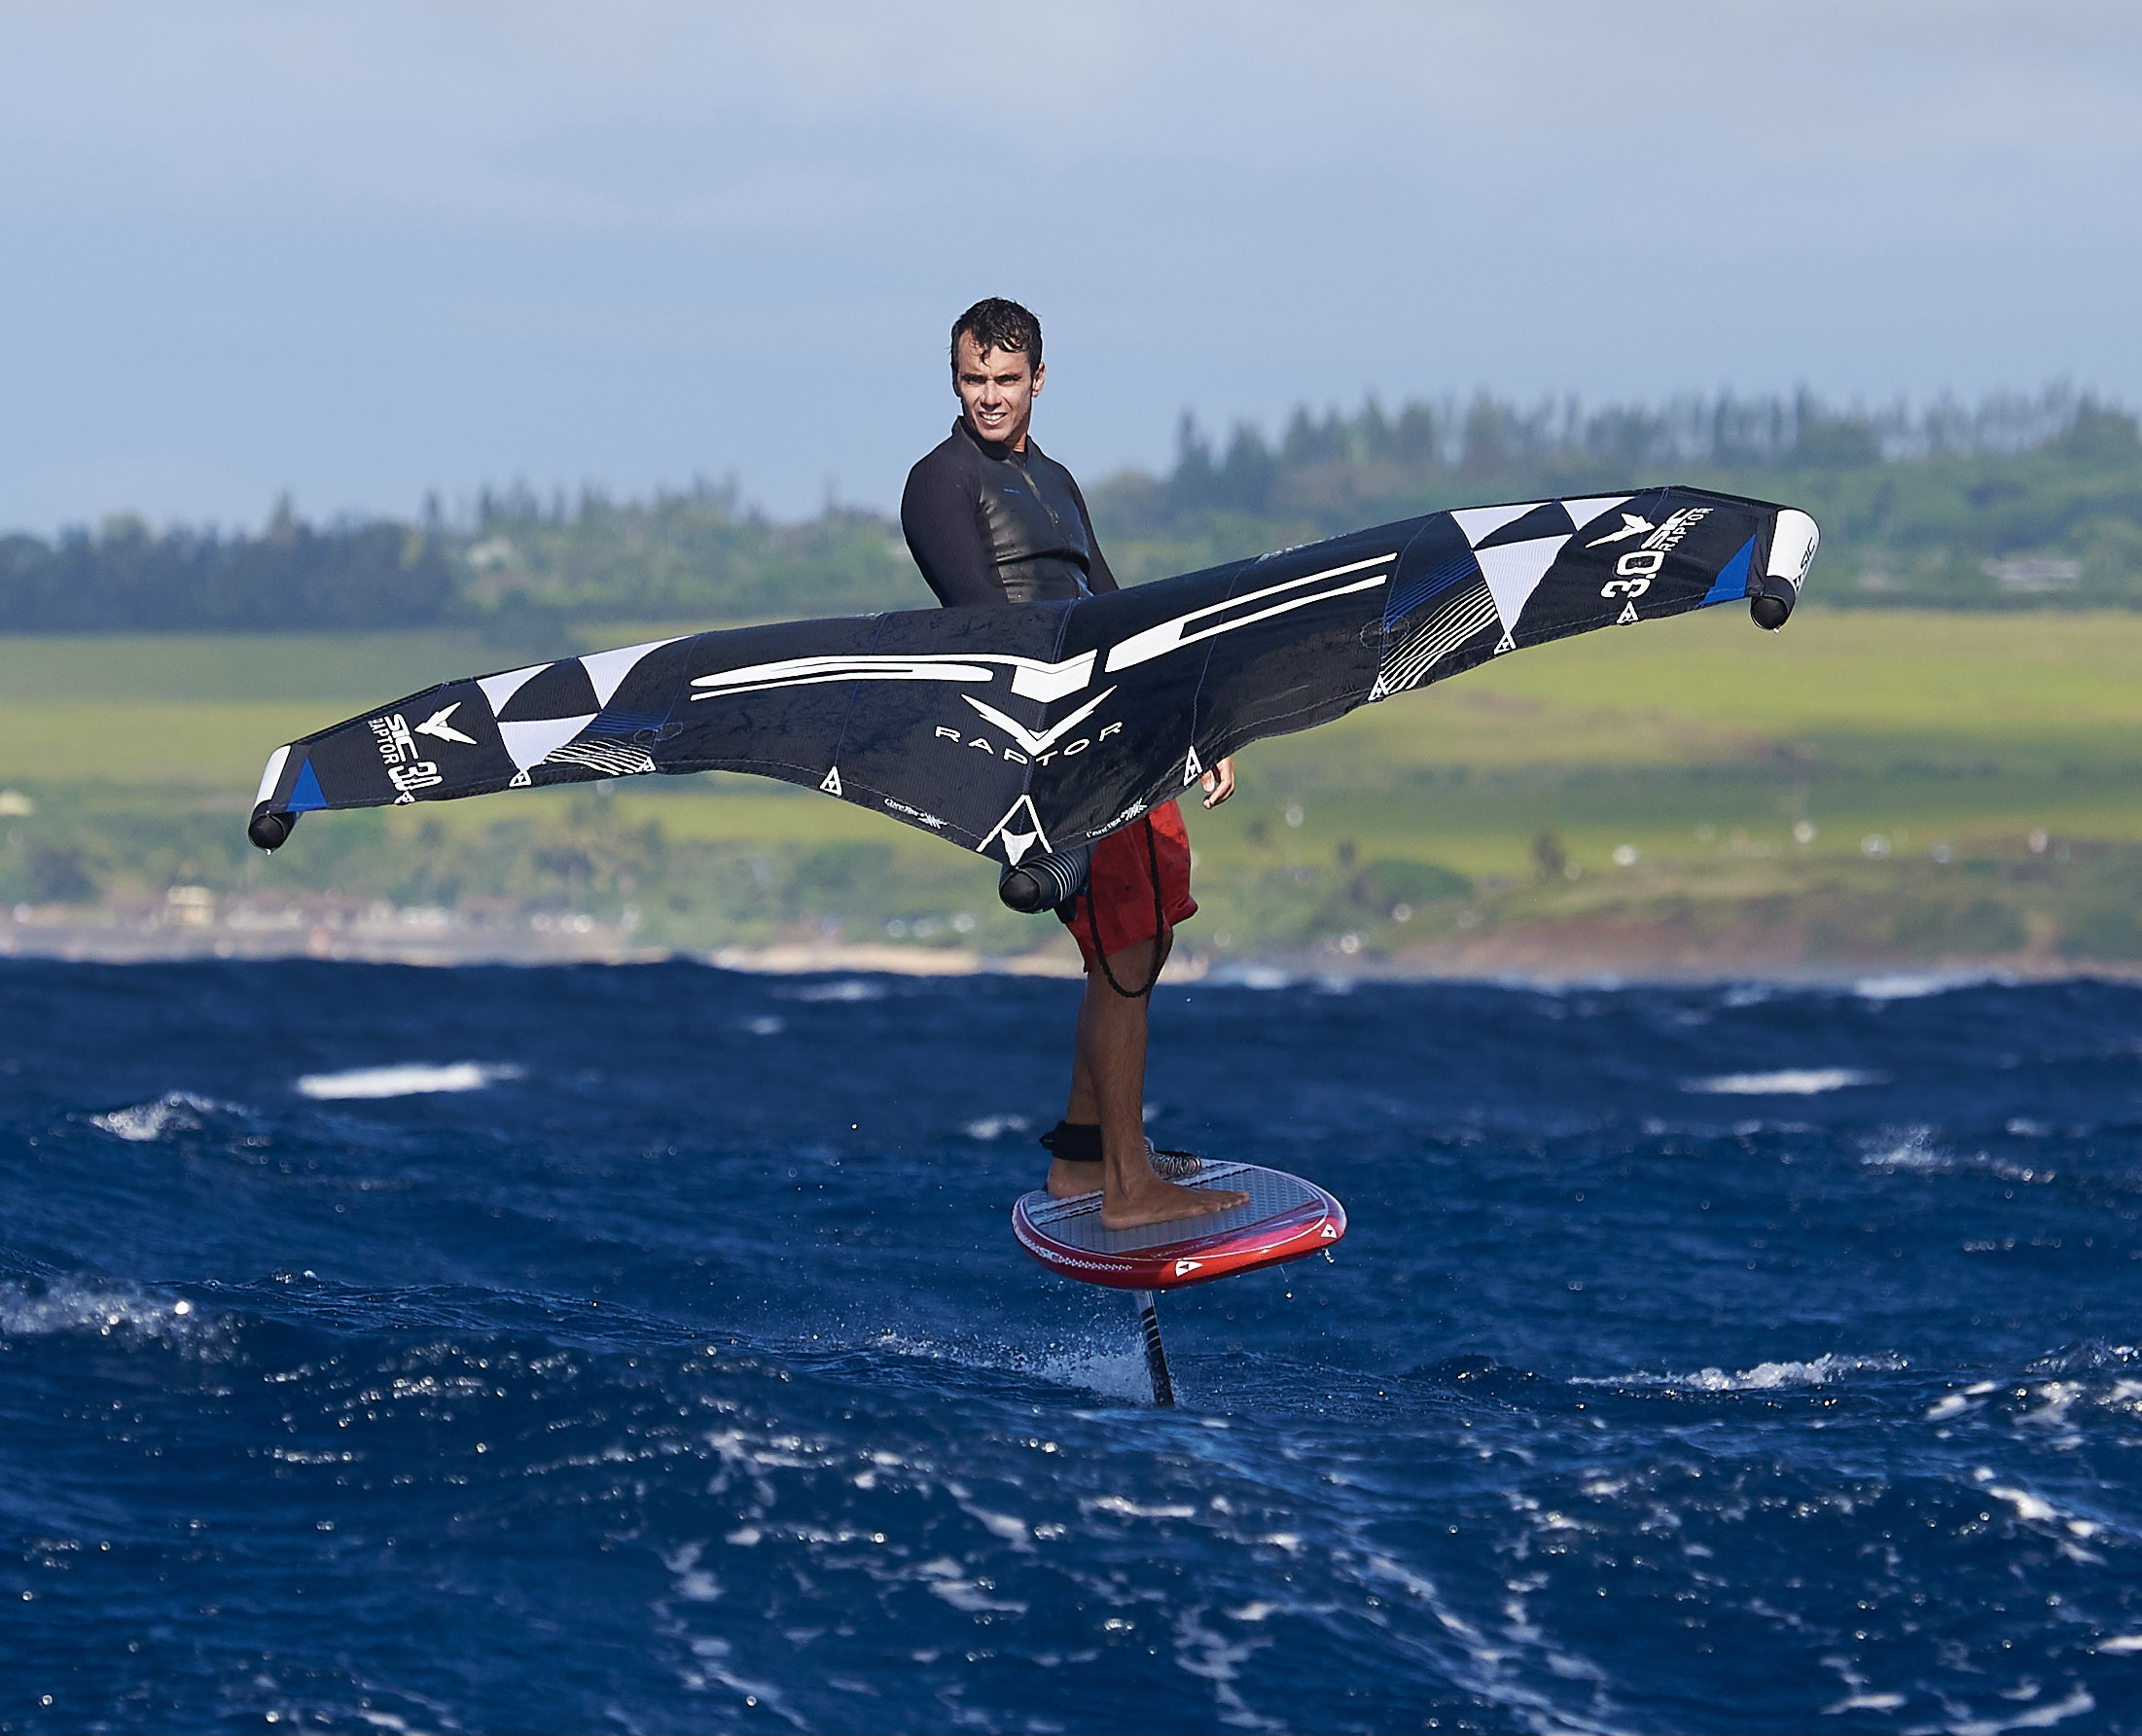 Σανίδα SiC Maui surf foil downwind 